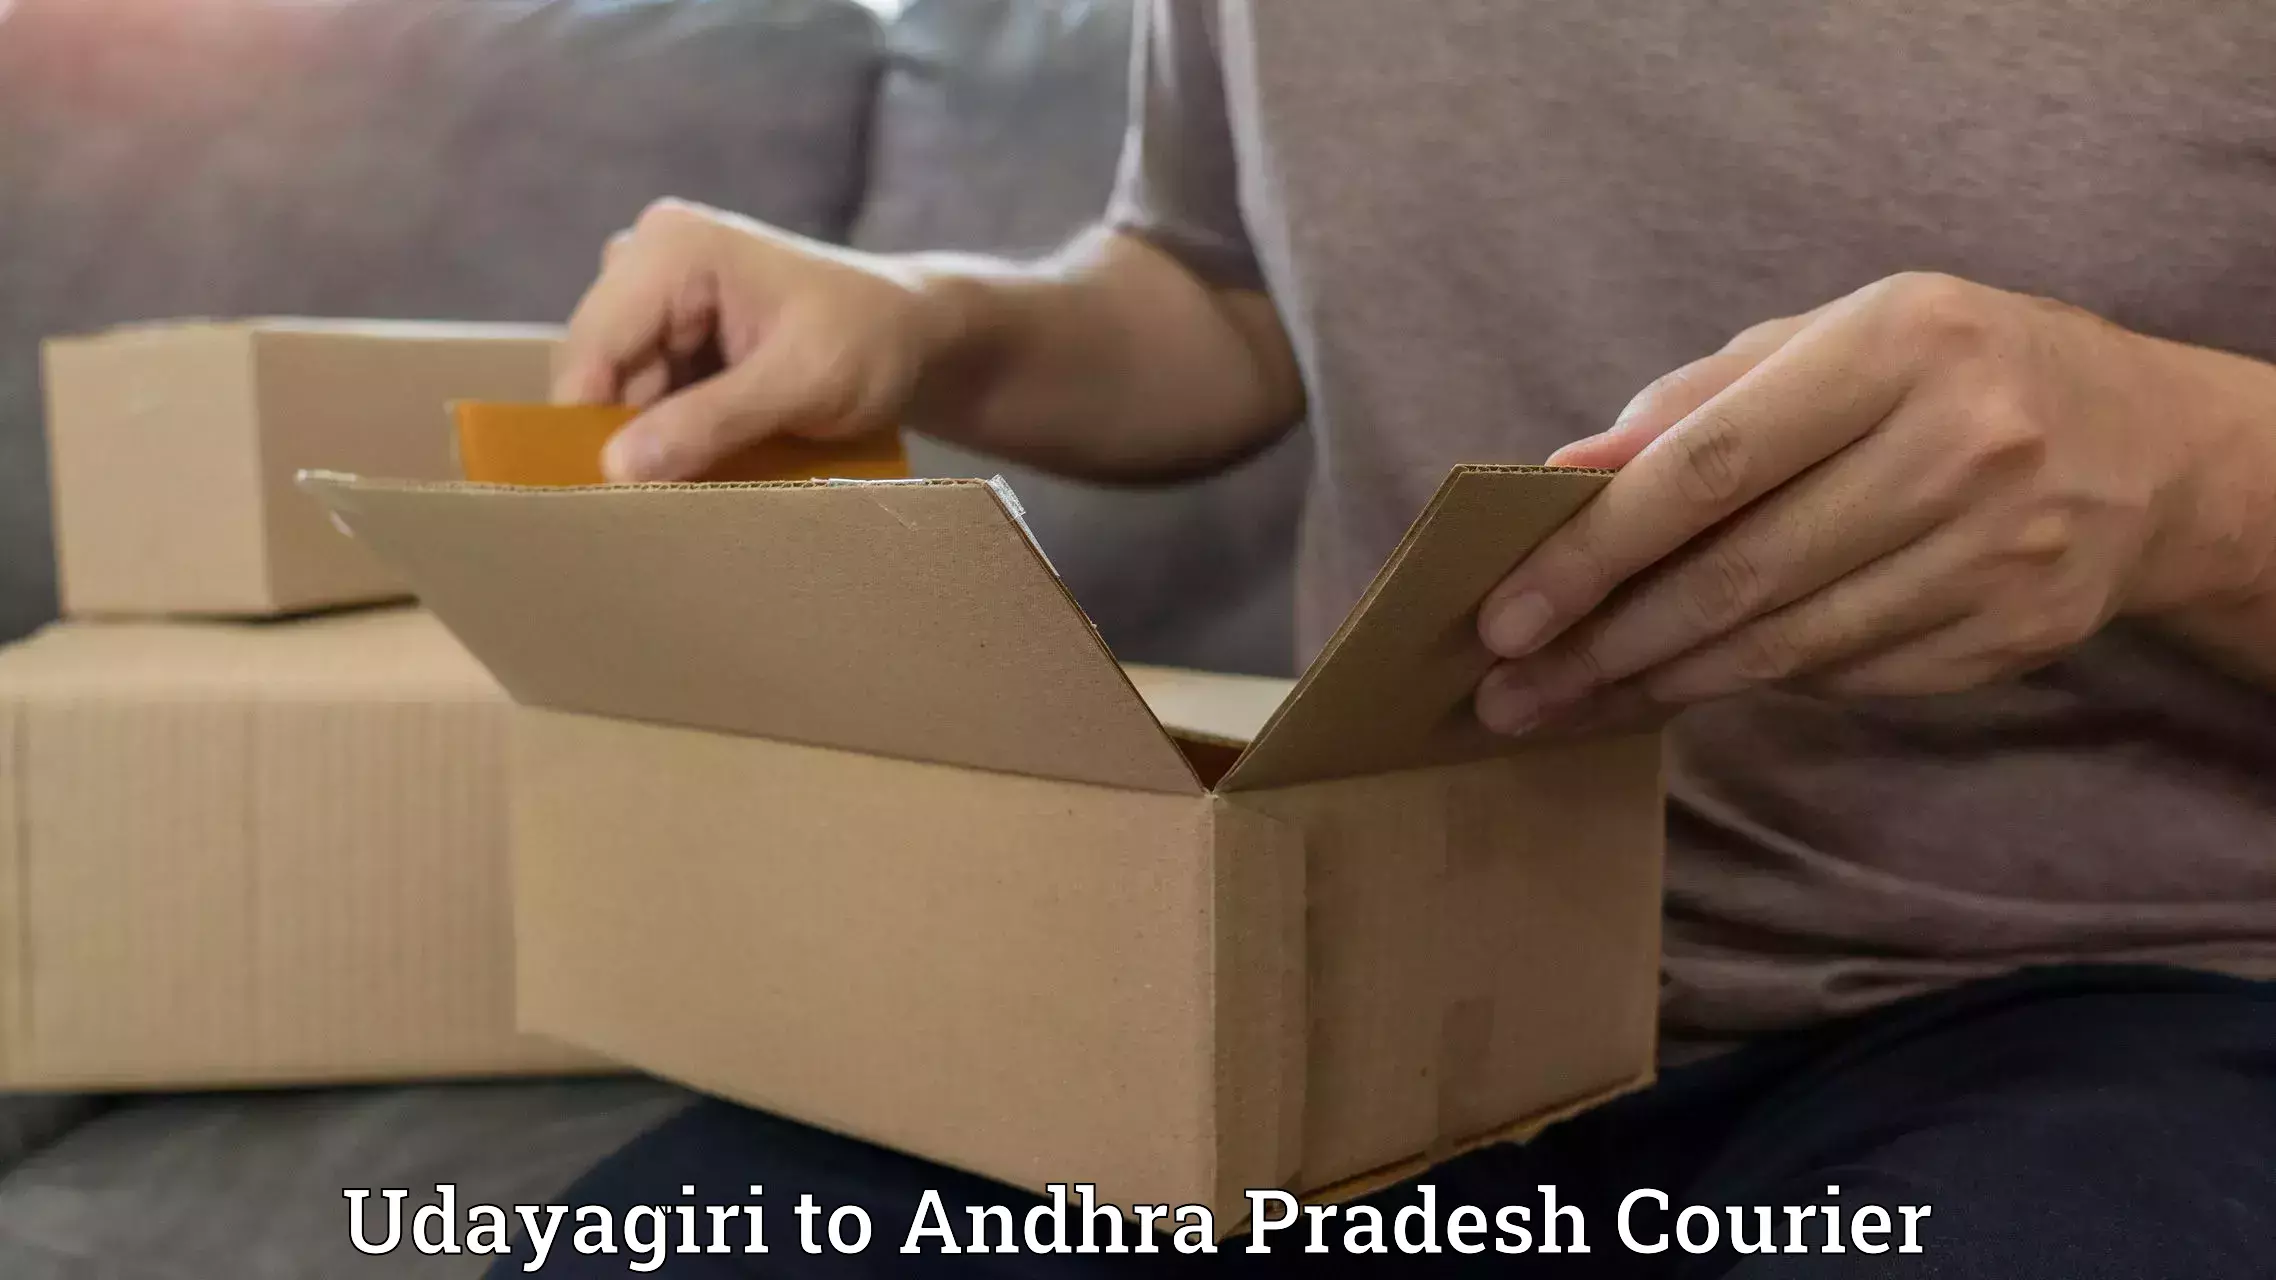 Next-generation courier services Udayagiri to Velgodu